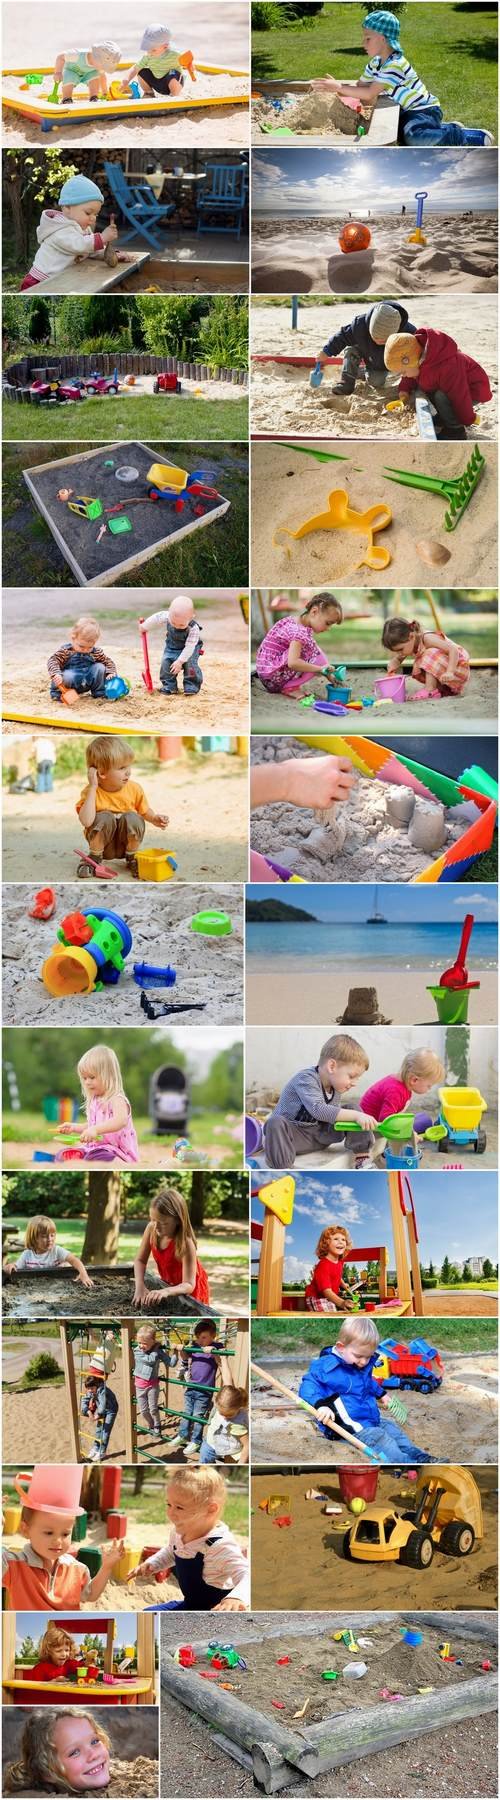 Children child in a sandbox toys 25 HQ Jpeg